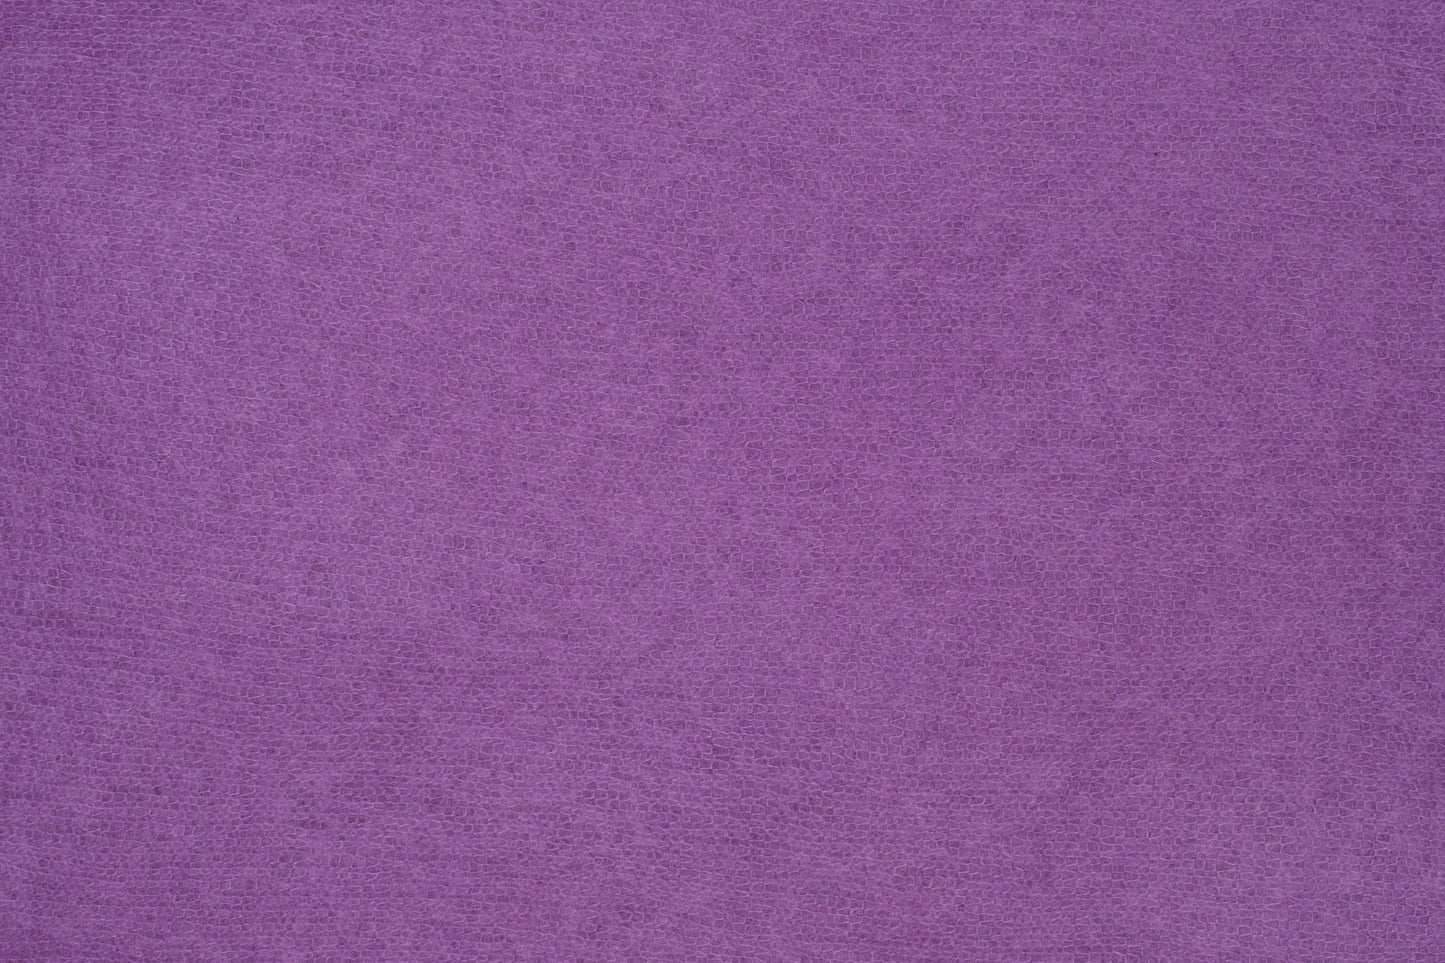 Cashmere Scarf Ultra Violet